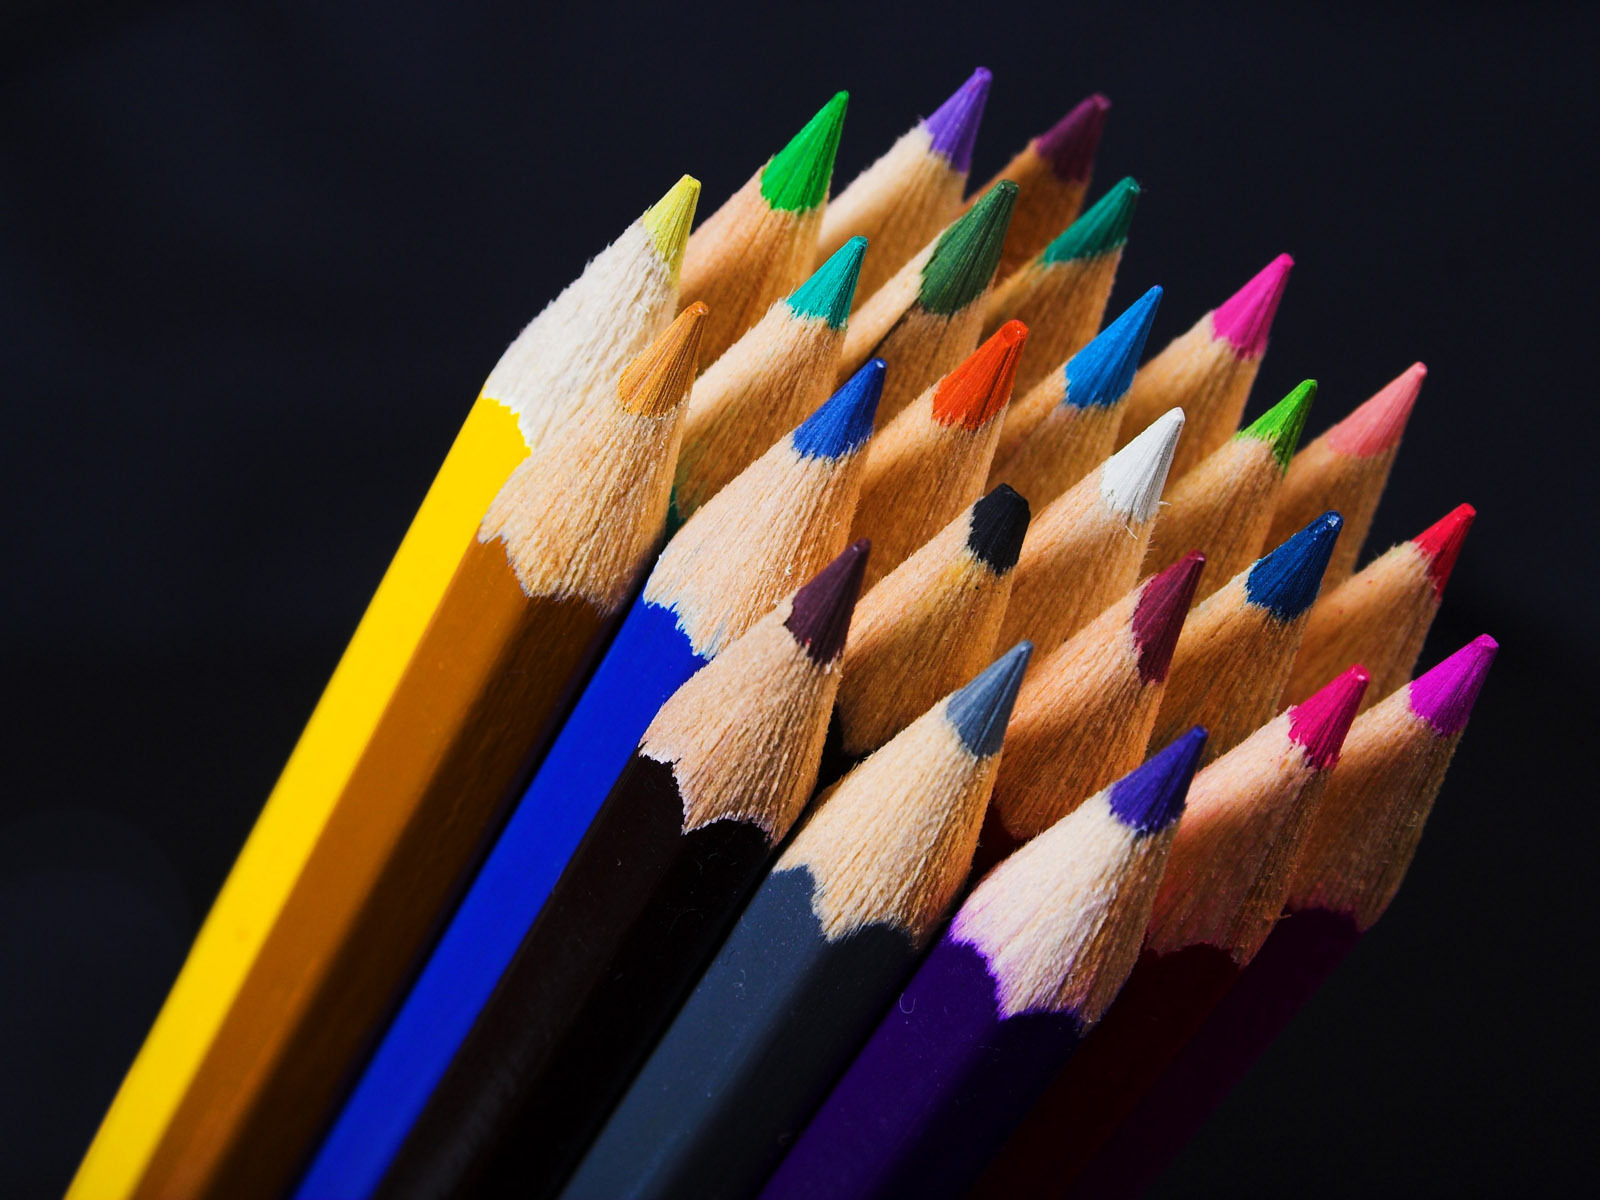 Colored pencils - Pencils Wallpaper (22186696) - Fanpop